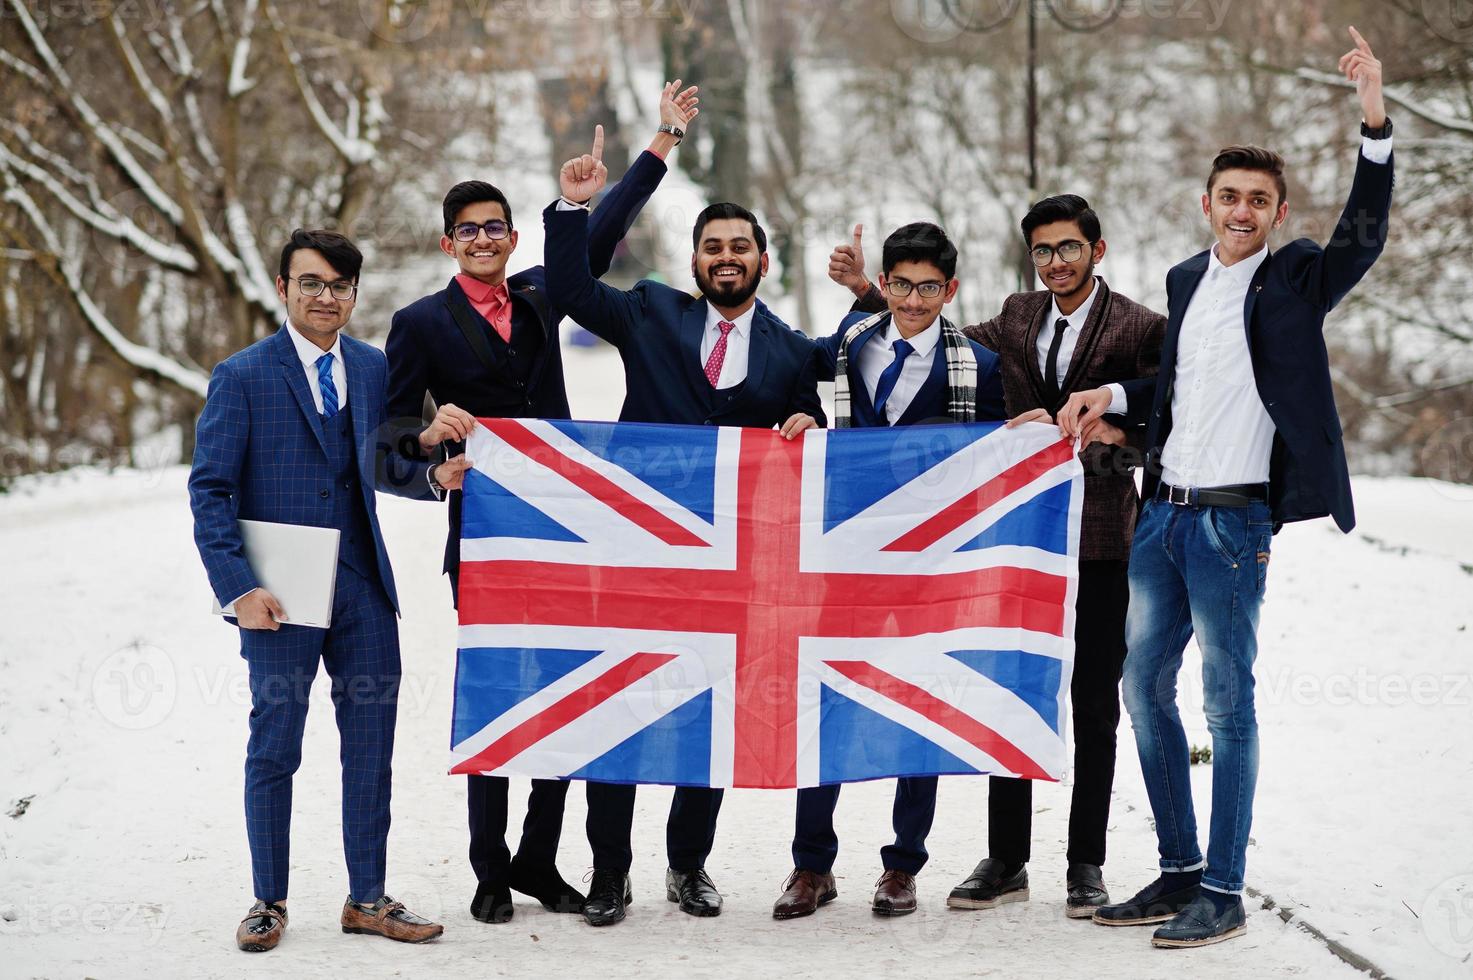 groupe de six hommes d'affaires indiens en costumes posés en plein air en journée d'hiver en europe avec le drapeau de la grande-bretagne. relations amicales avec l'inde et le royaume-uni. photo